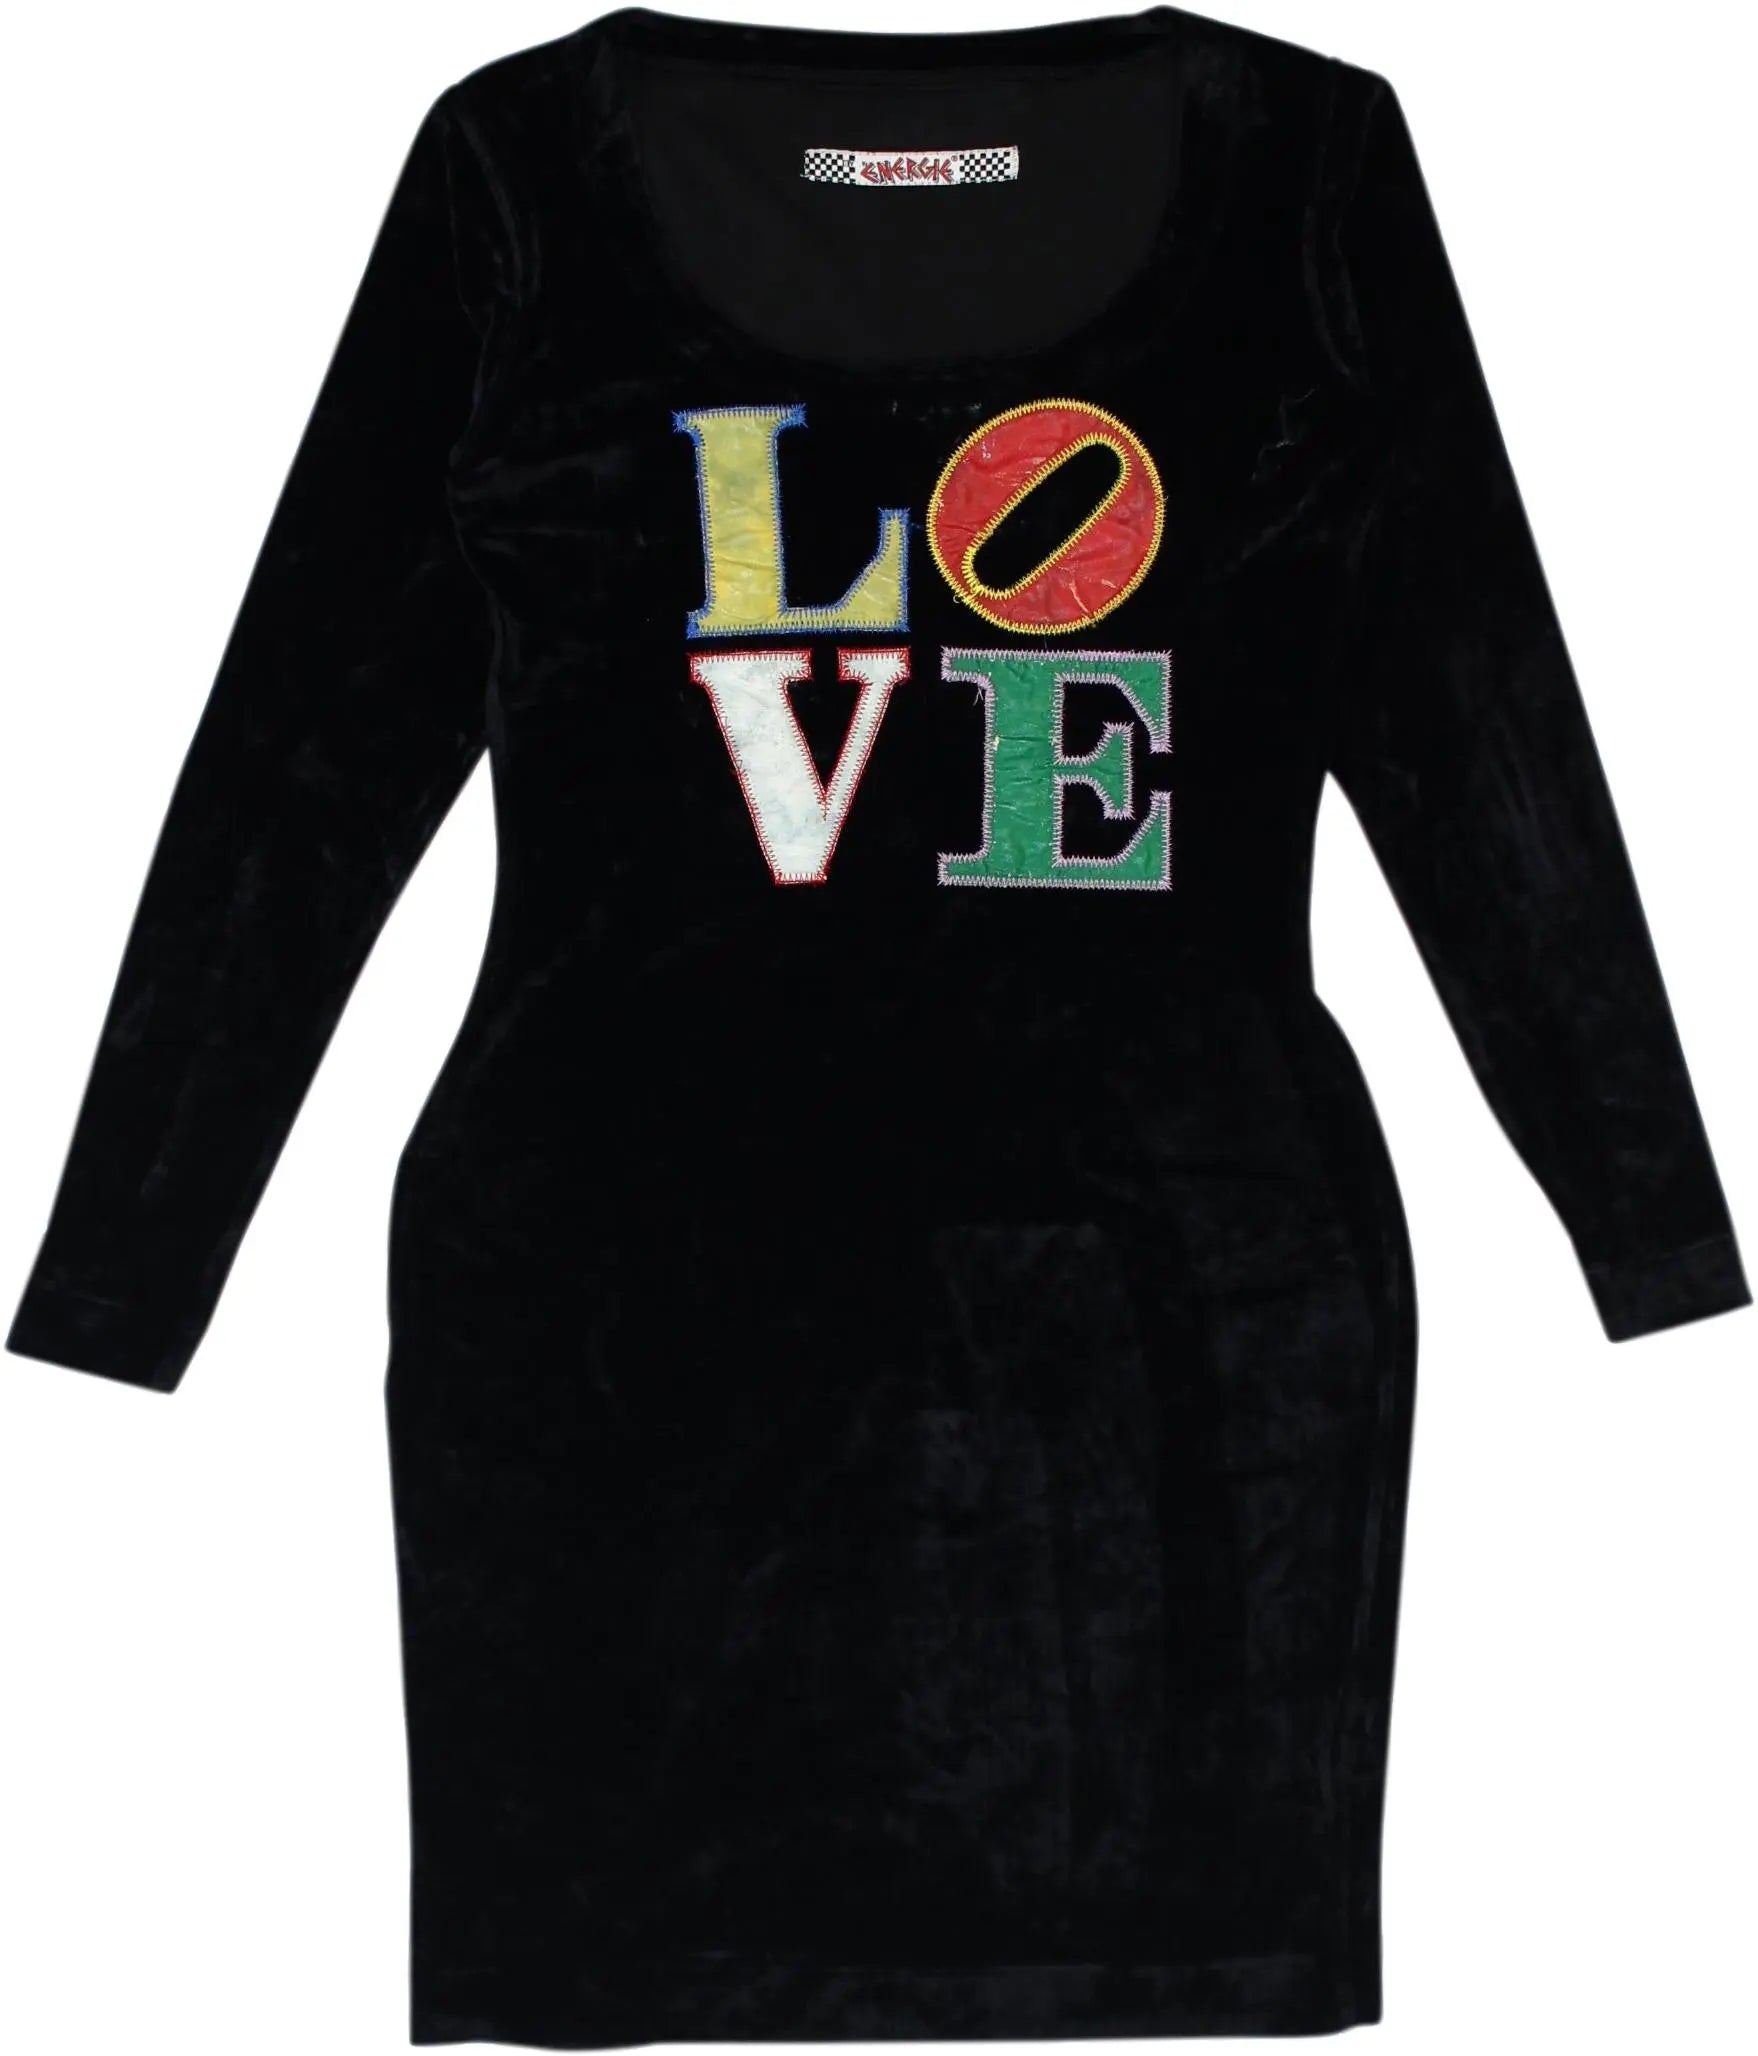 Energie - Black Velvet Dress- ThriftTale.com - Vintage and second handclothing